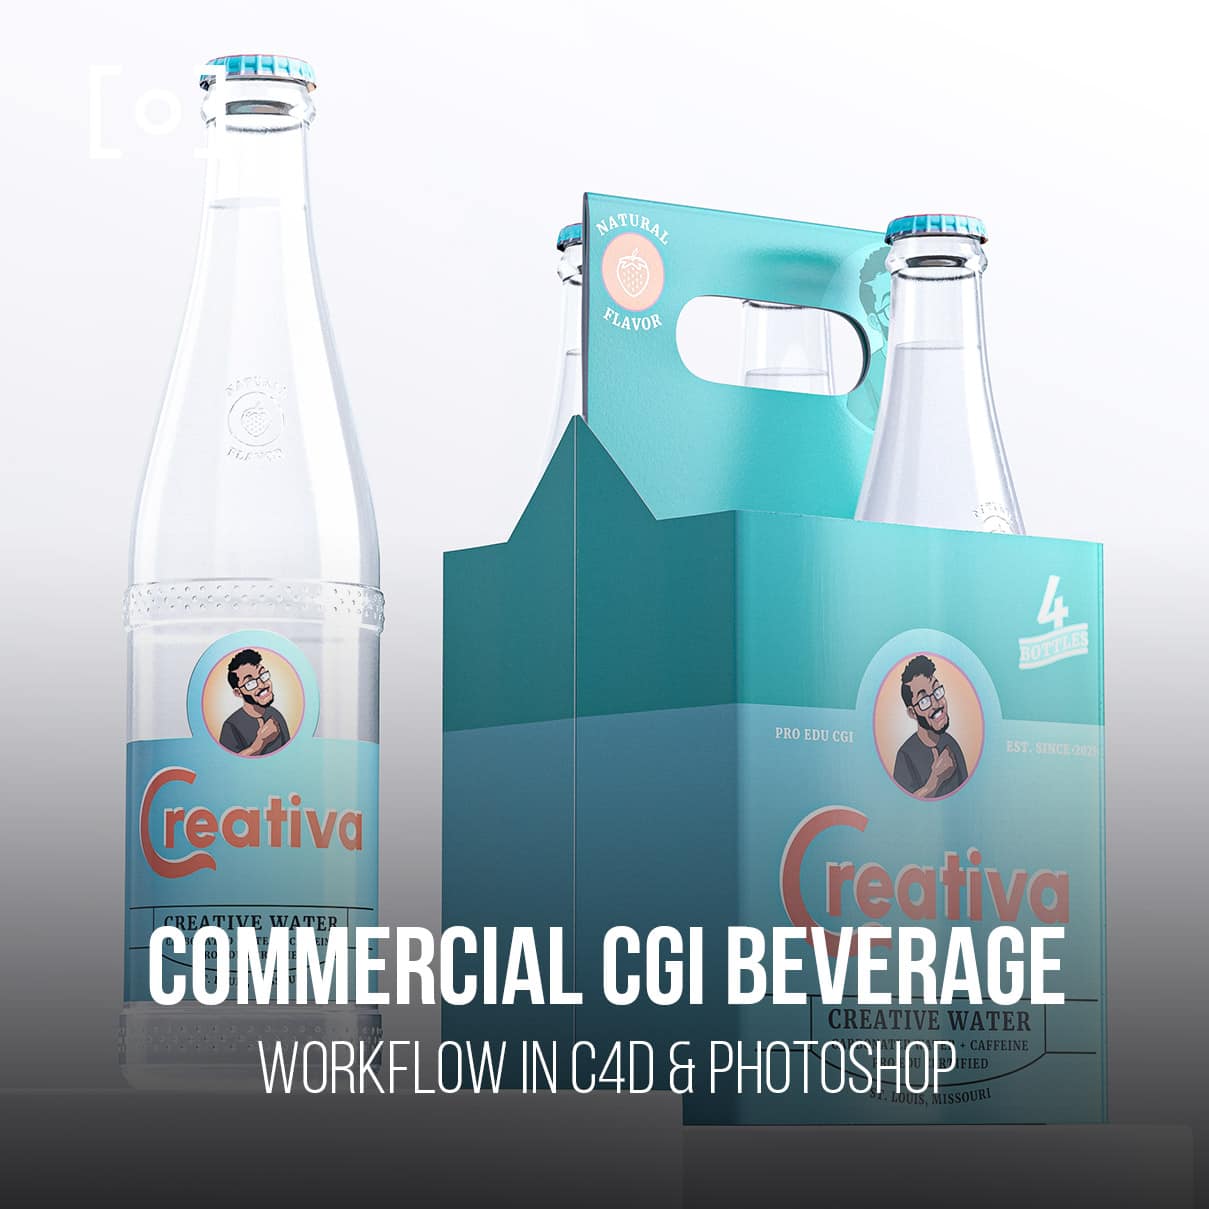 Commercial CGI Beverage Workflow In C4D & Photoshop - PRO EDU PRO EDU PRO EDU